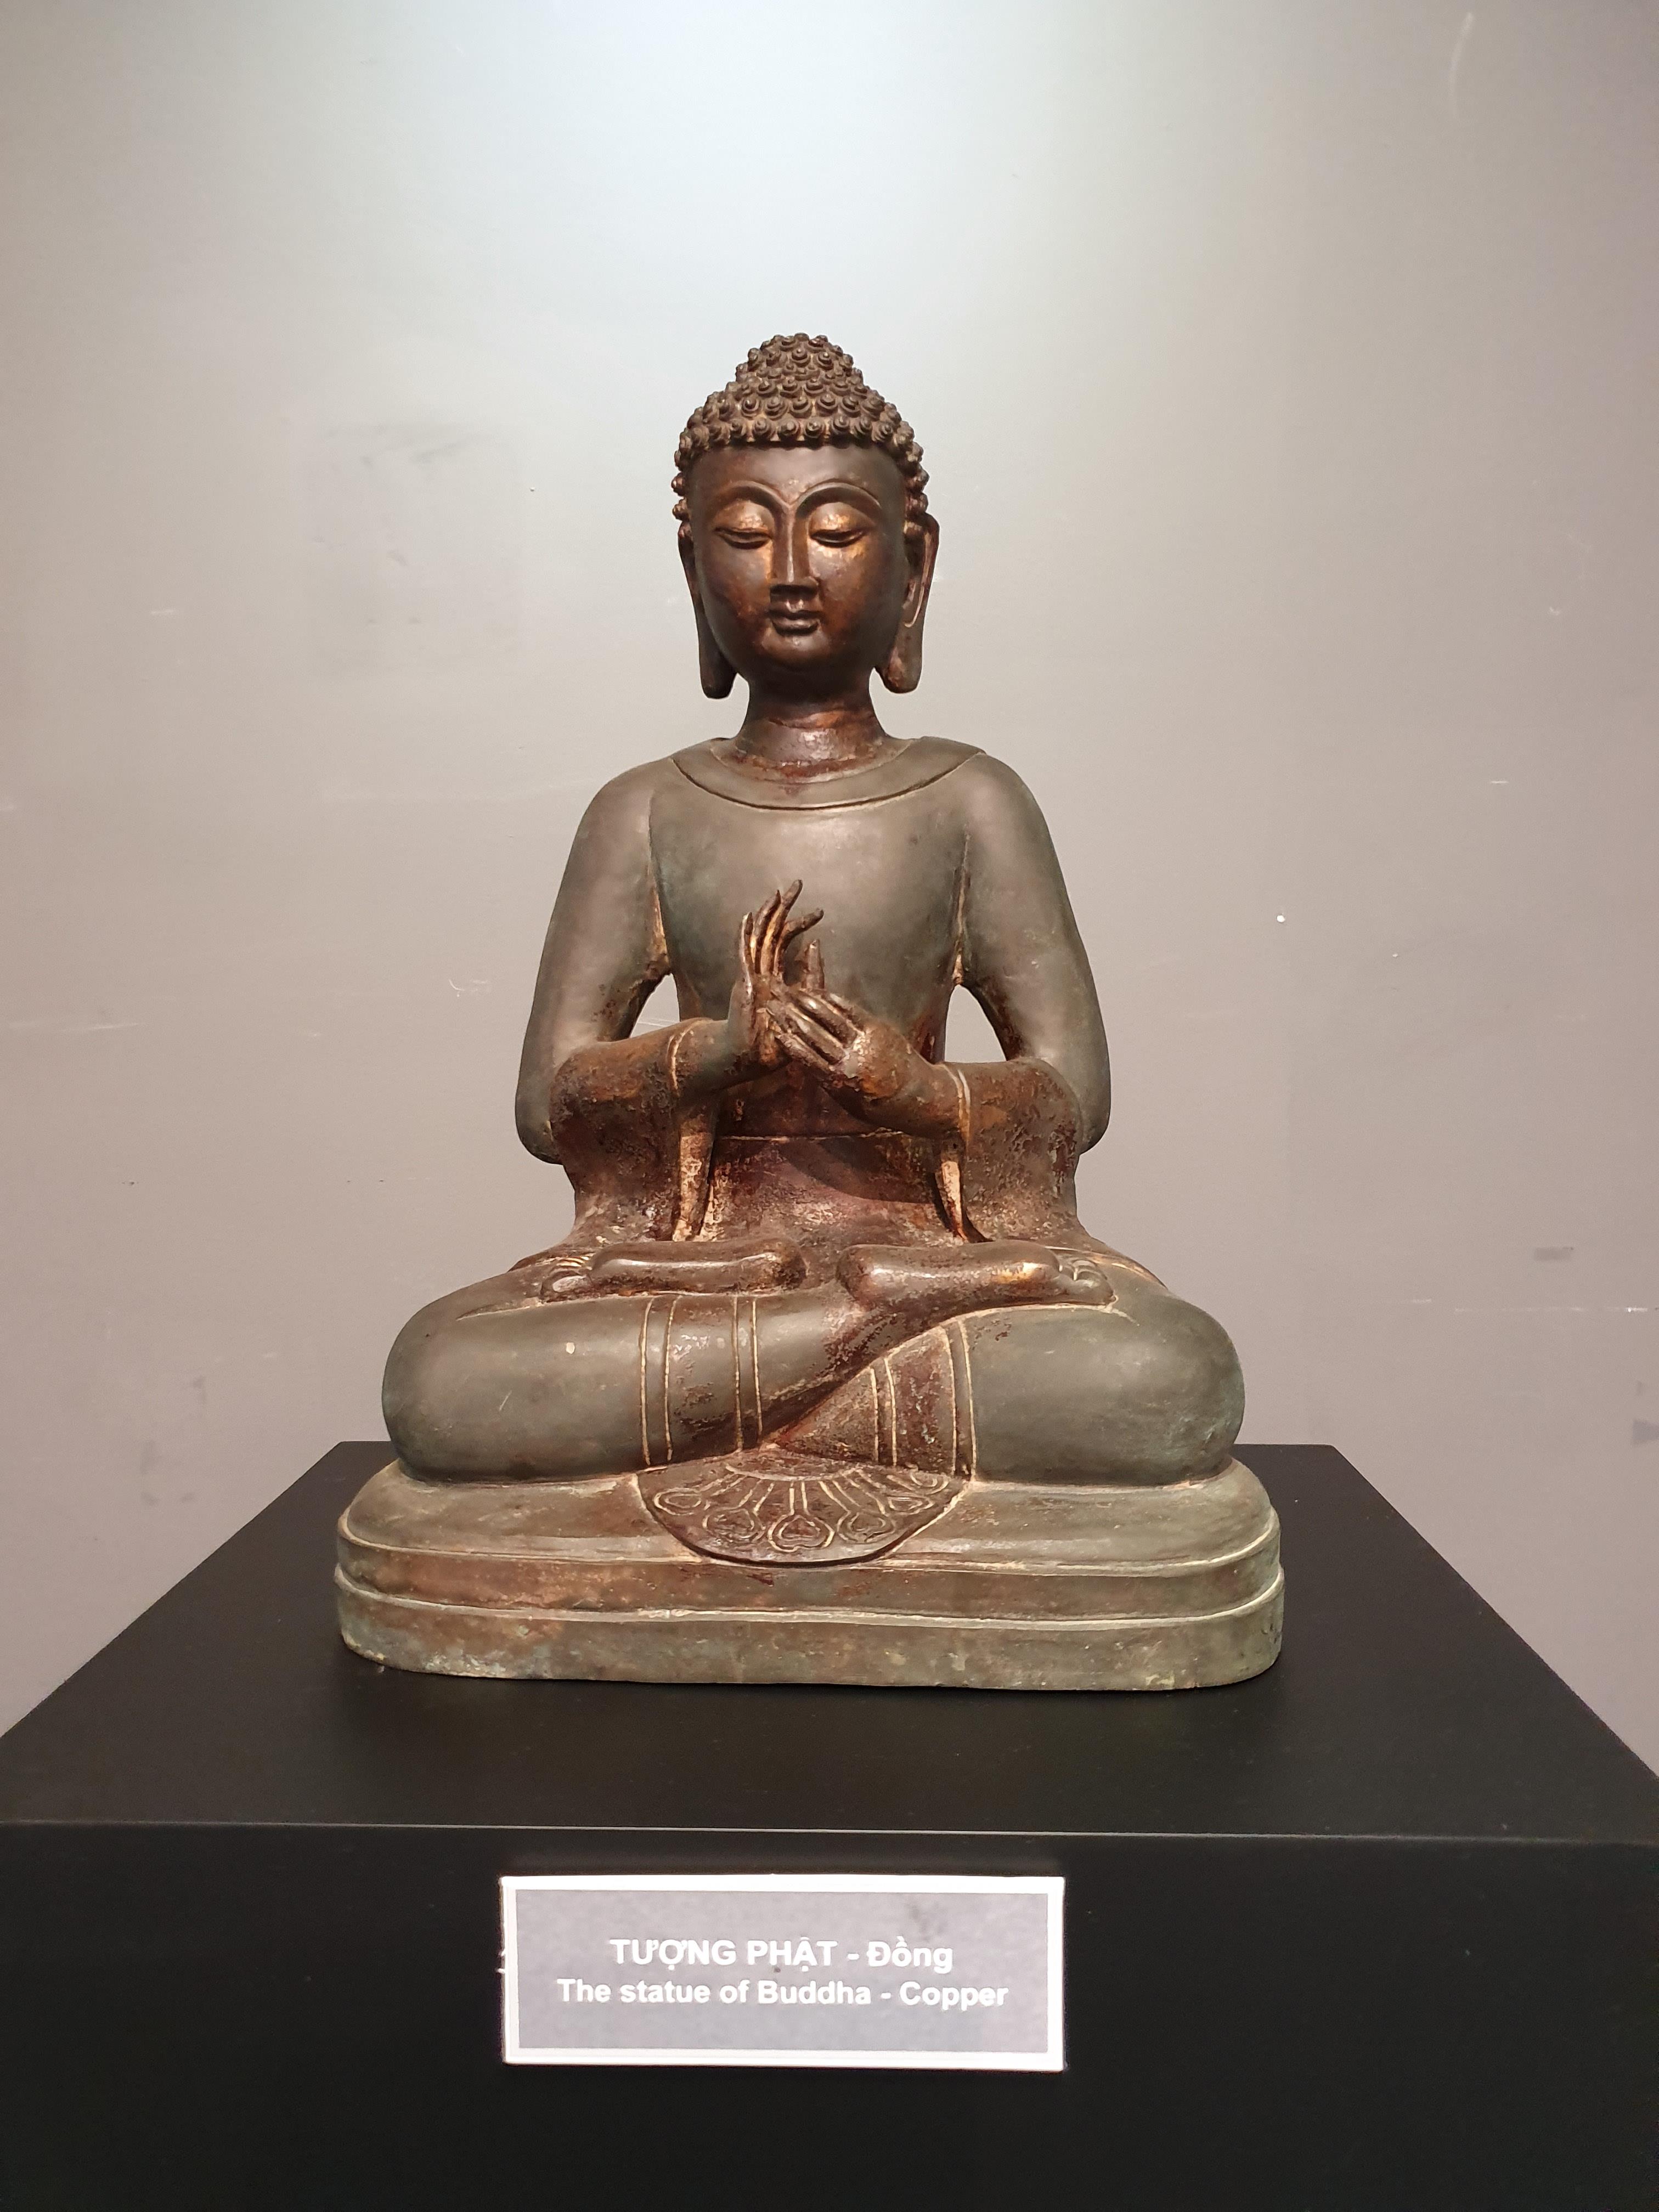 Pho tượng Phật cổ là một trong những điểm đến không thể bỏ qua đối với những người yêu thích nghệ thuật và tâm linh. Với những bức tượng được chế tác tinh xảo, Pho tượng Phật cổ là một điểm tham quan đáng để ghé thăm và tìm hiểu.